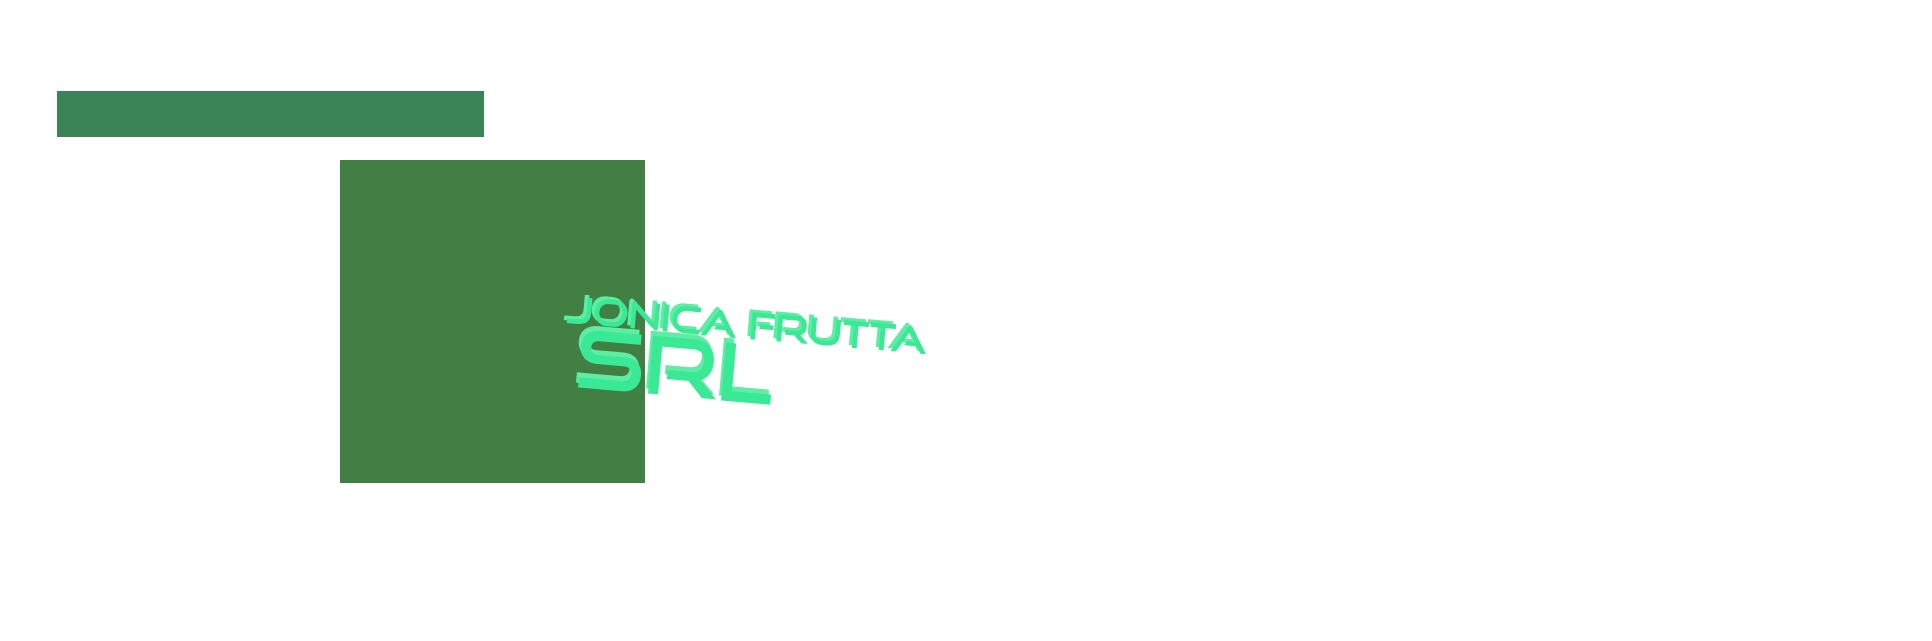 logo Jonica Frutta Srl